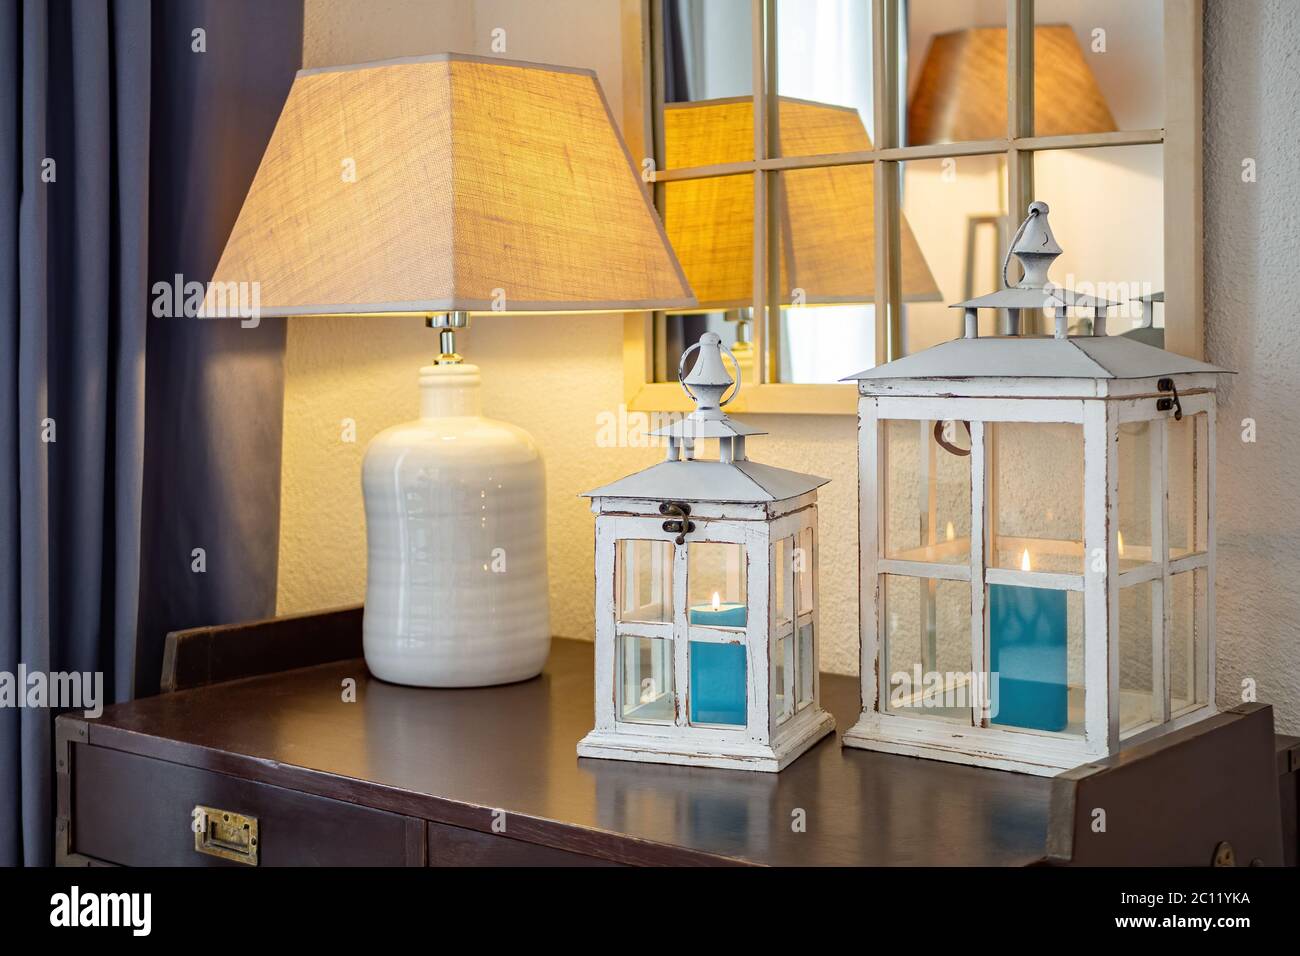 Lanternes en bois vintage, chandeliers avec bougies bleues à l'intérieur, placé sur une table sombre avec lampe dans une pièce confortable. Banque D'Images